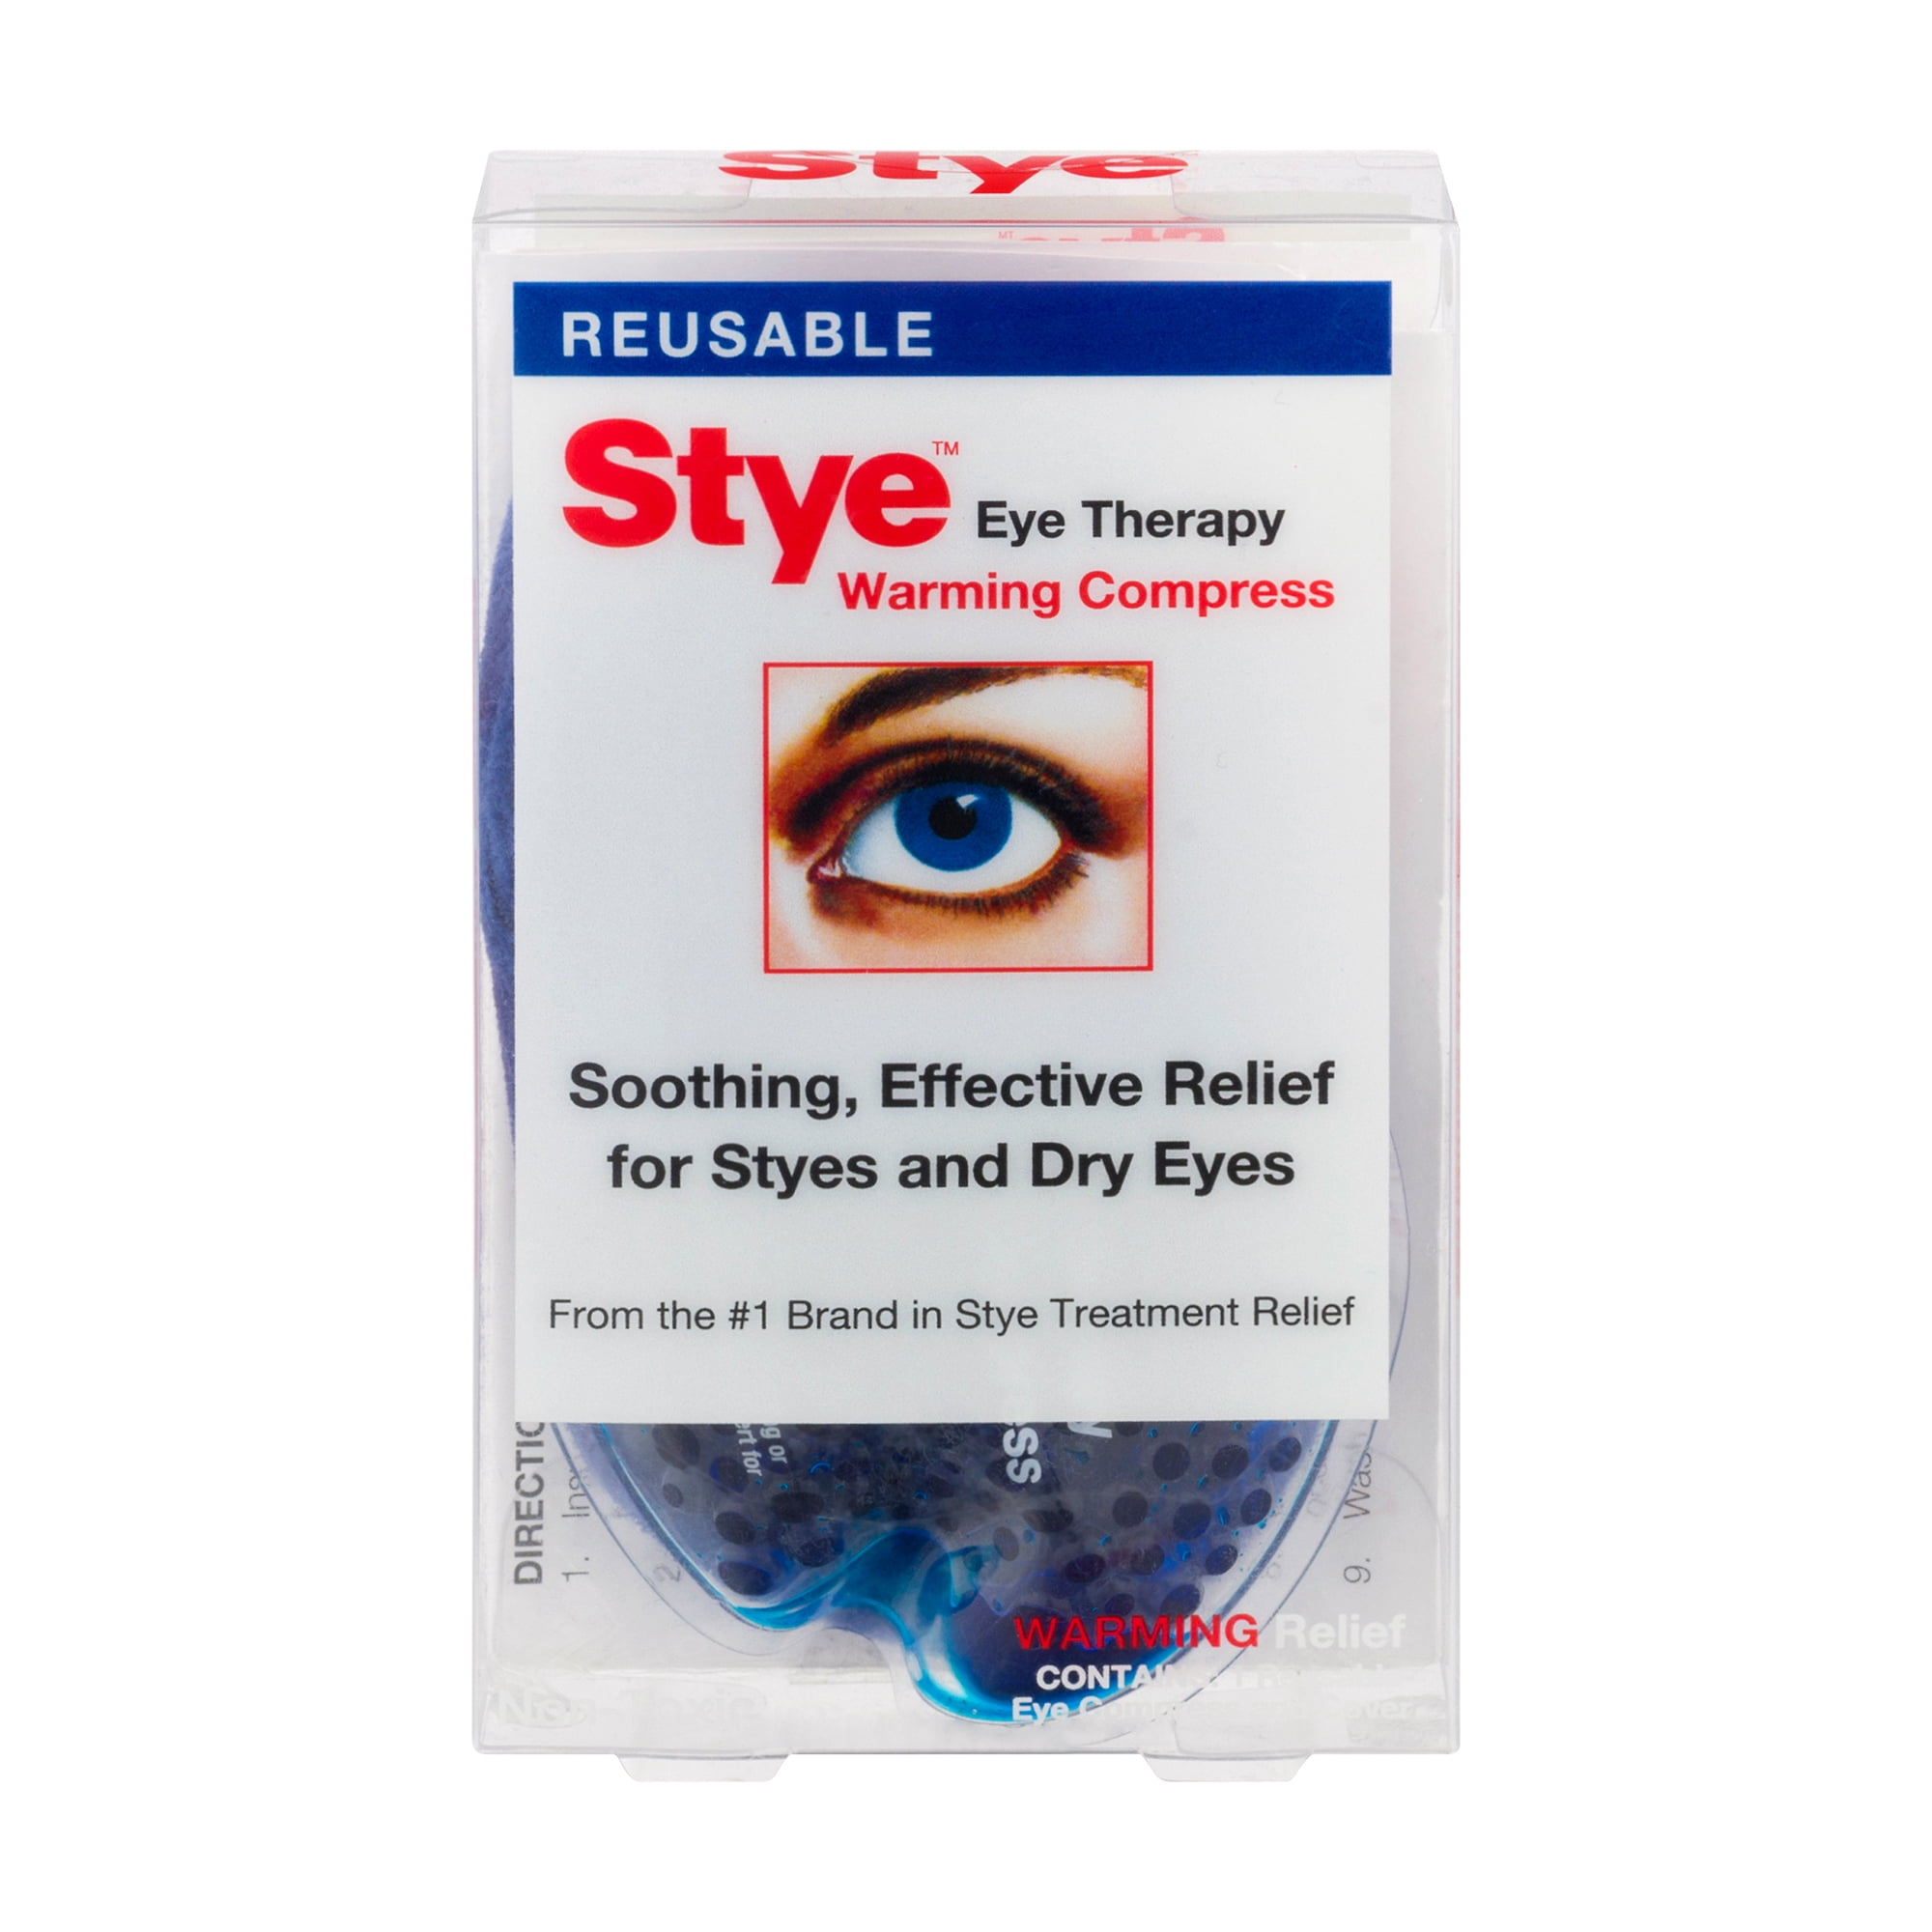 Stye Warming Compress, Eye Therapy, Reusable, Box, 1.0 CT